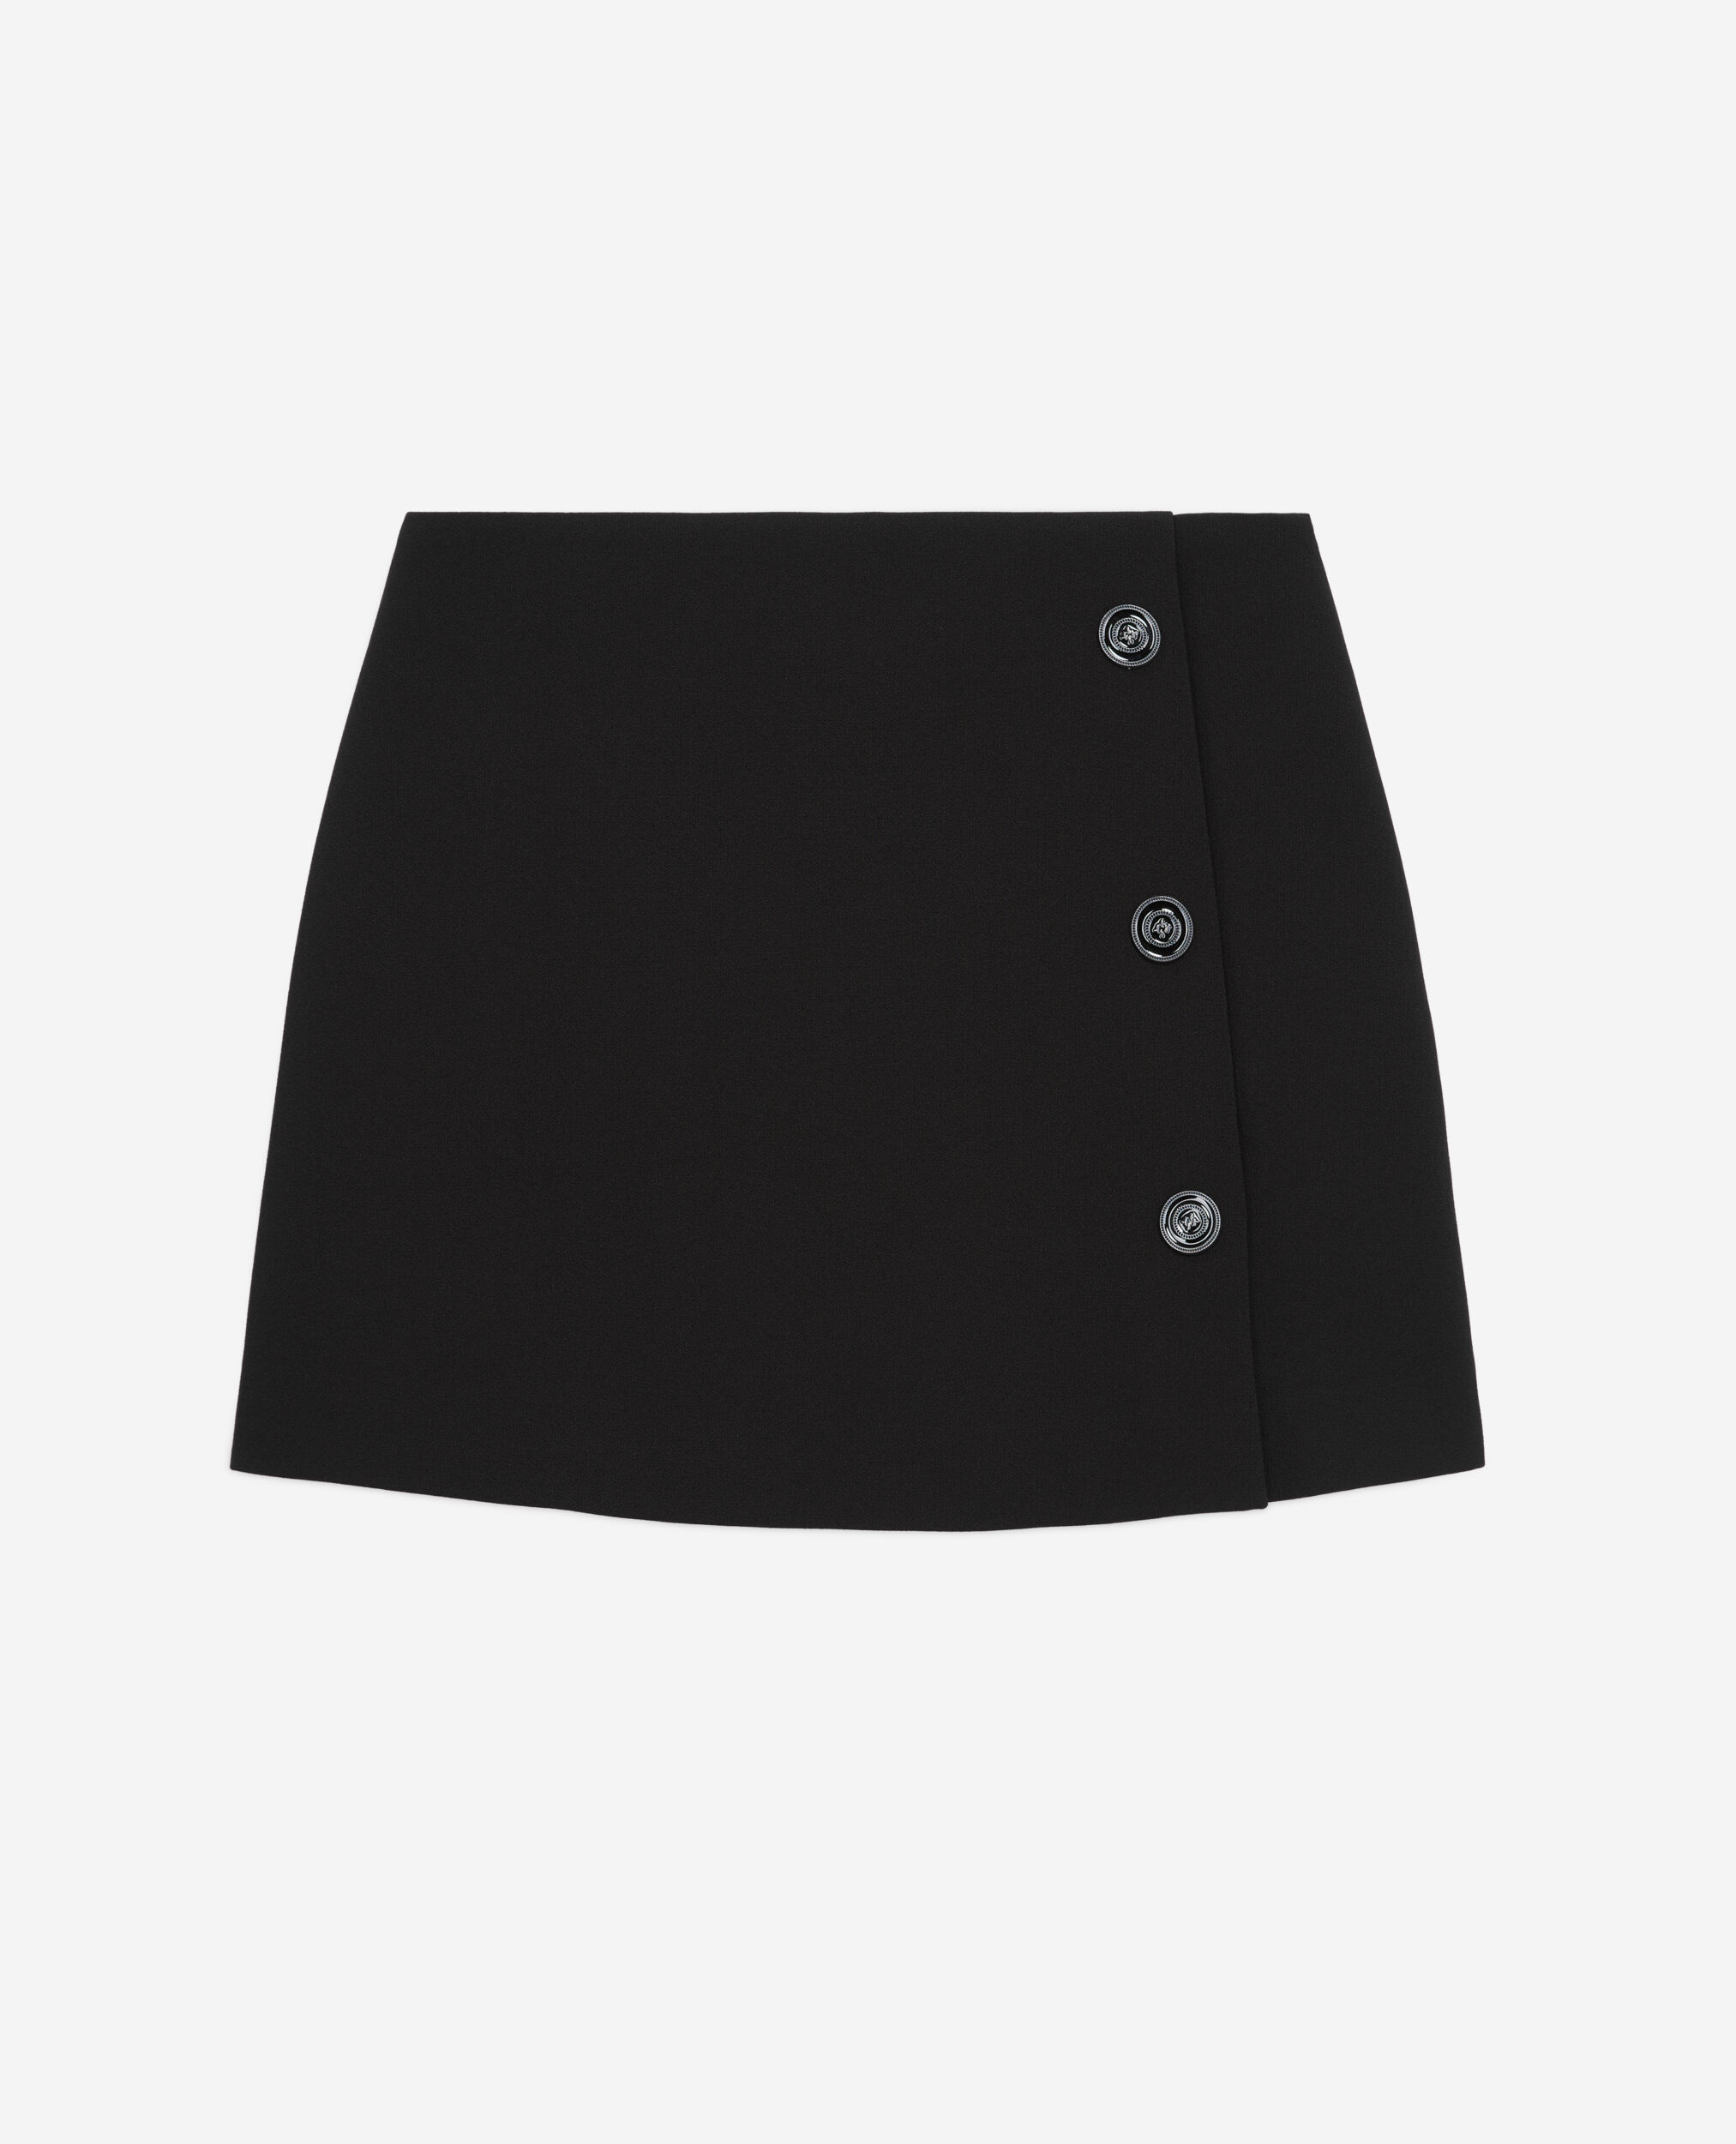 Falda corta negra crepé, BLACK, hi-res image number null